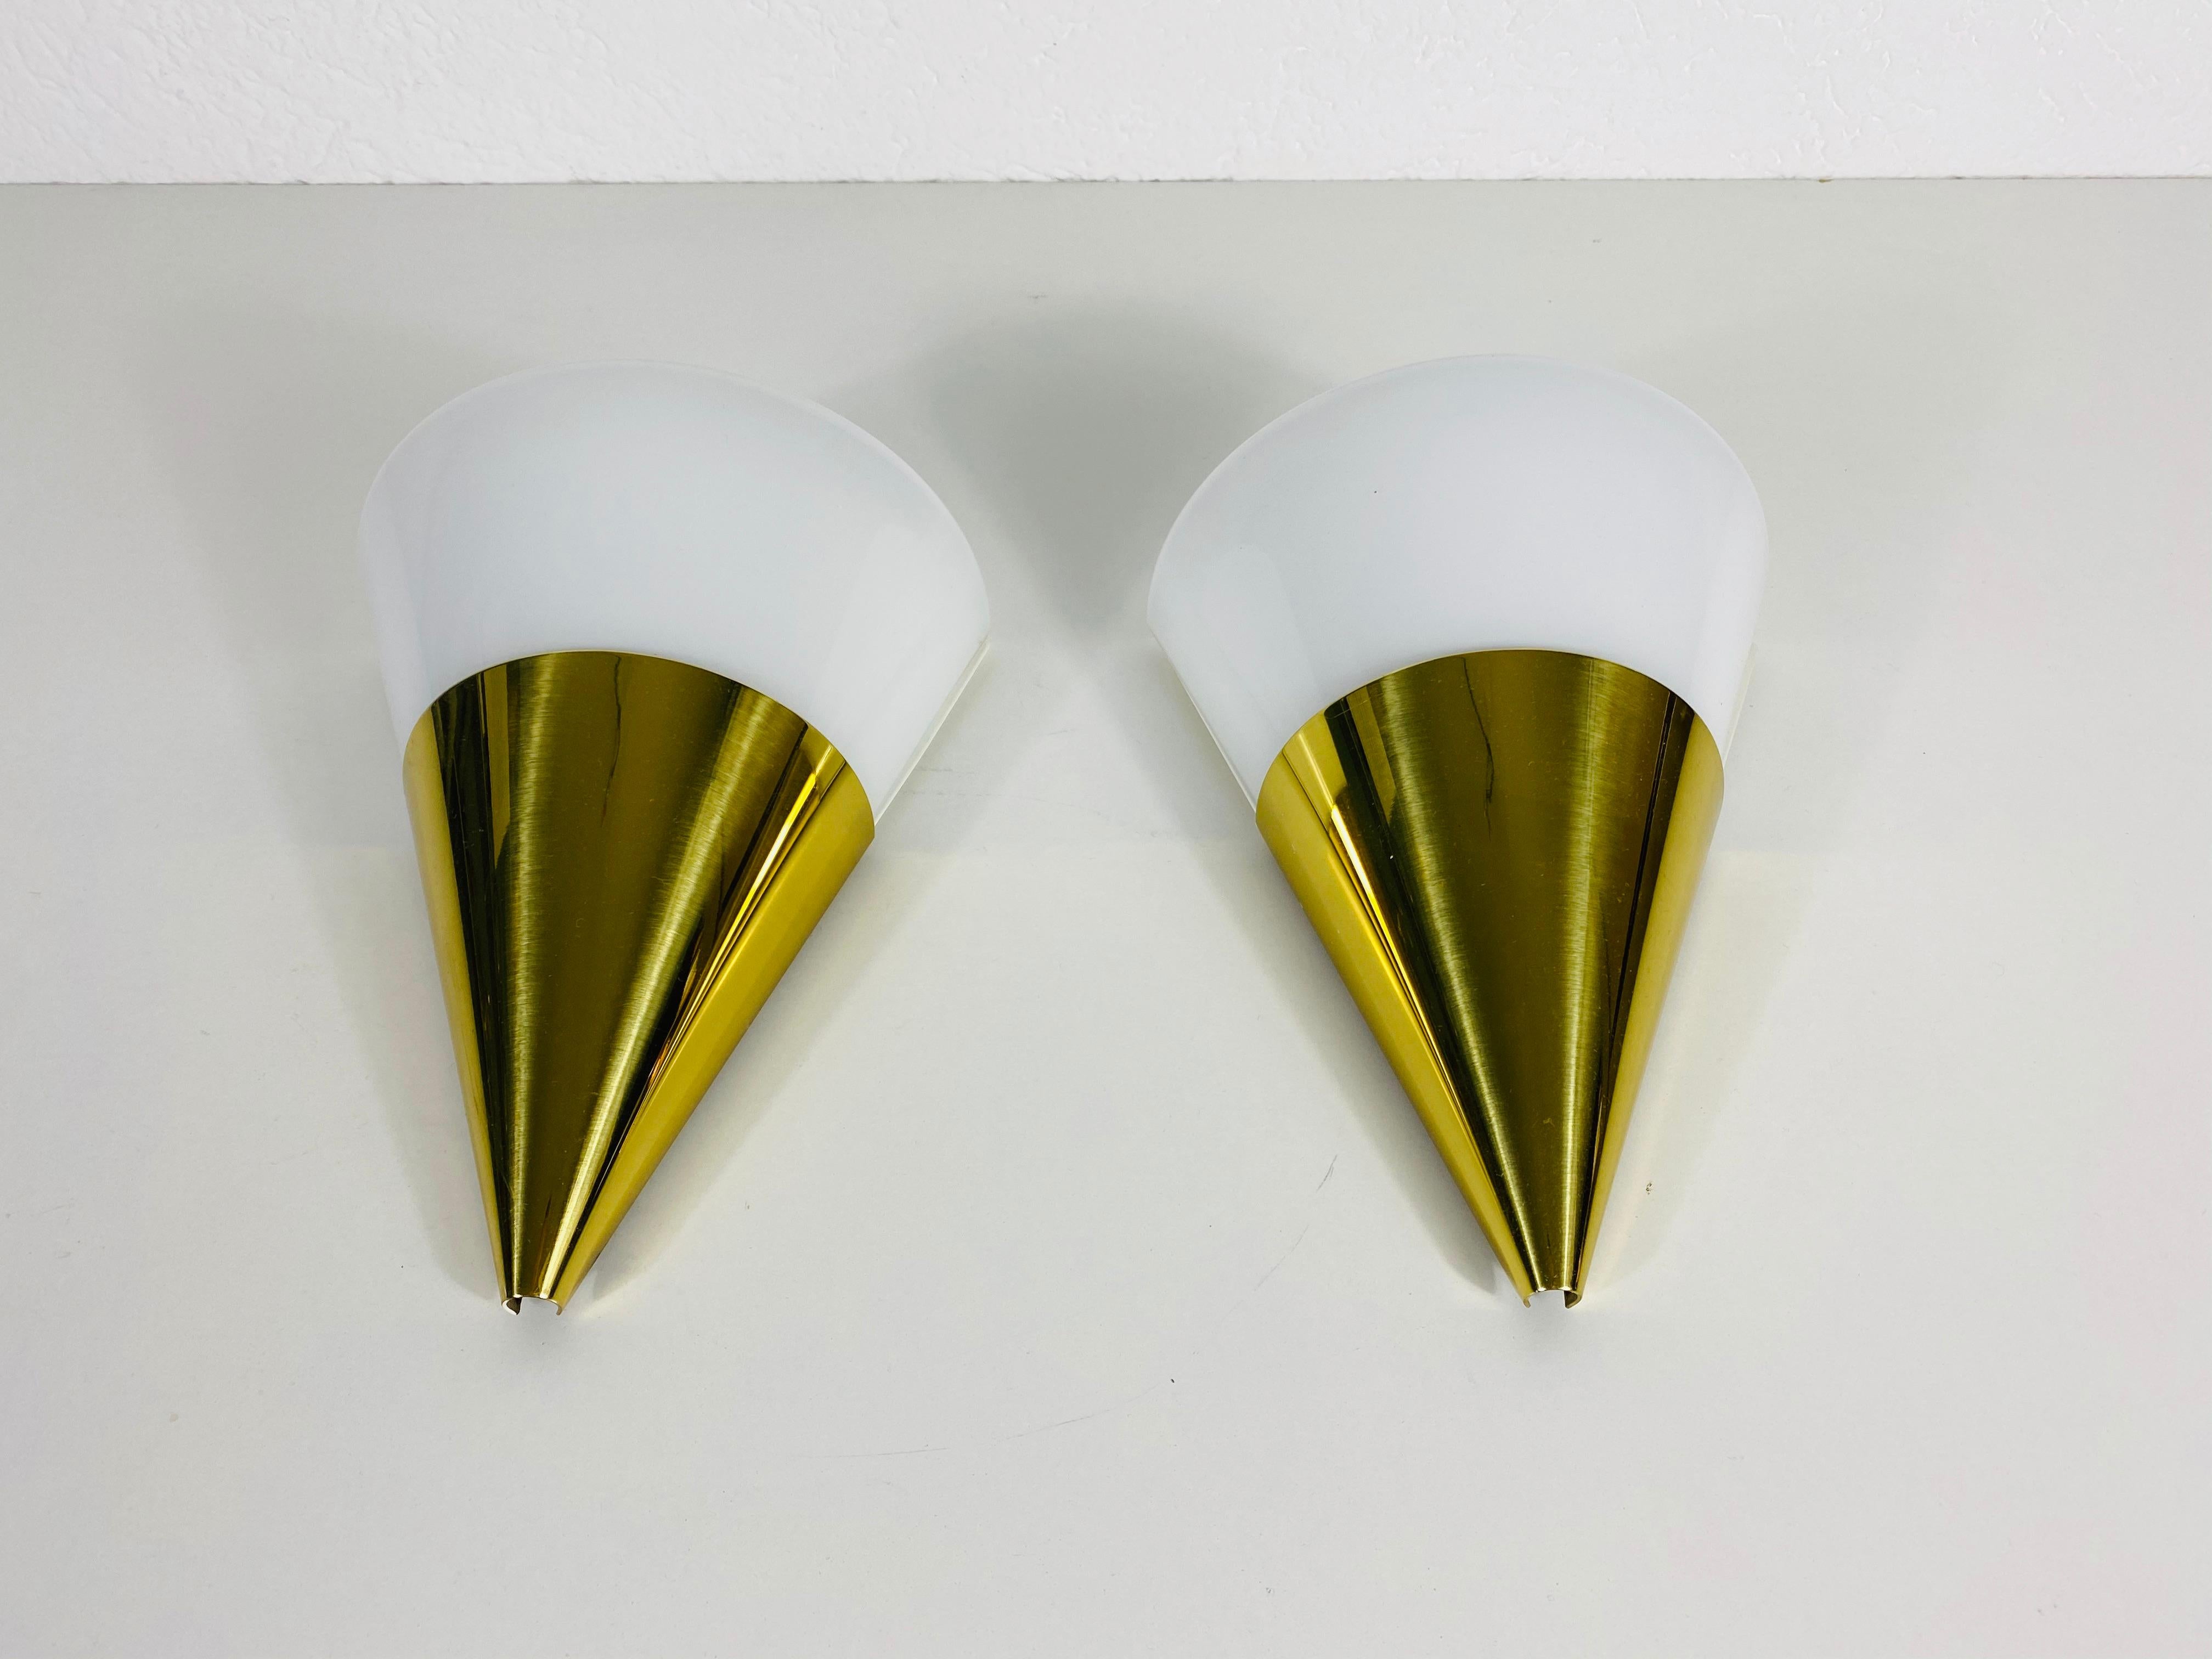 Une belle paire d'appliques modernes de Glashütte Limburg fabriquées en Allemagne dans les années 1980. Ils ont une forme conique et sont fabriqués en laiton et en verre opalin. Le dos est en métal.

Les éclairages nécessitent des ampoules E14 et